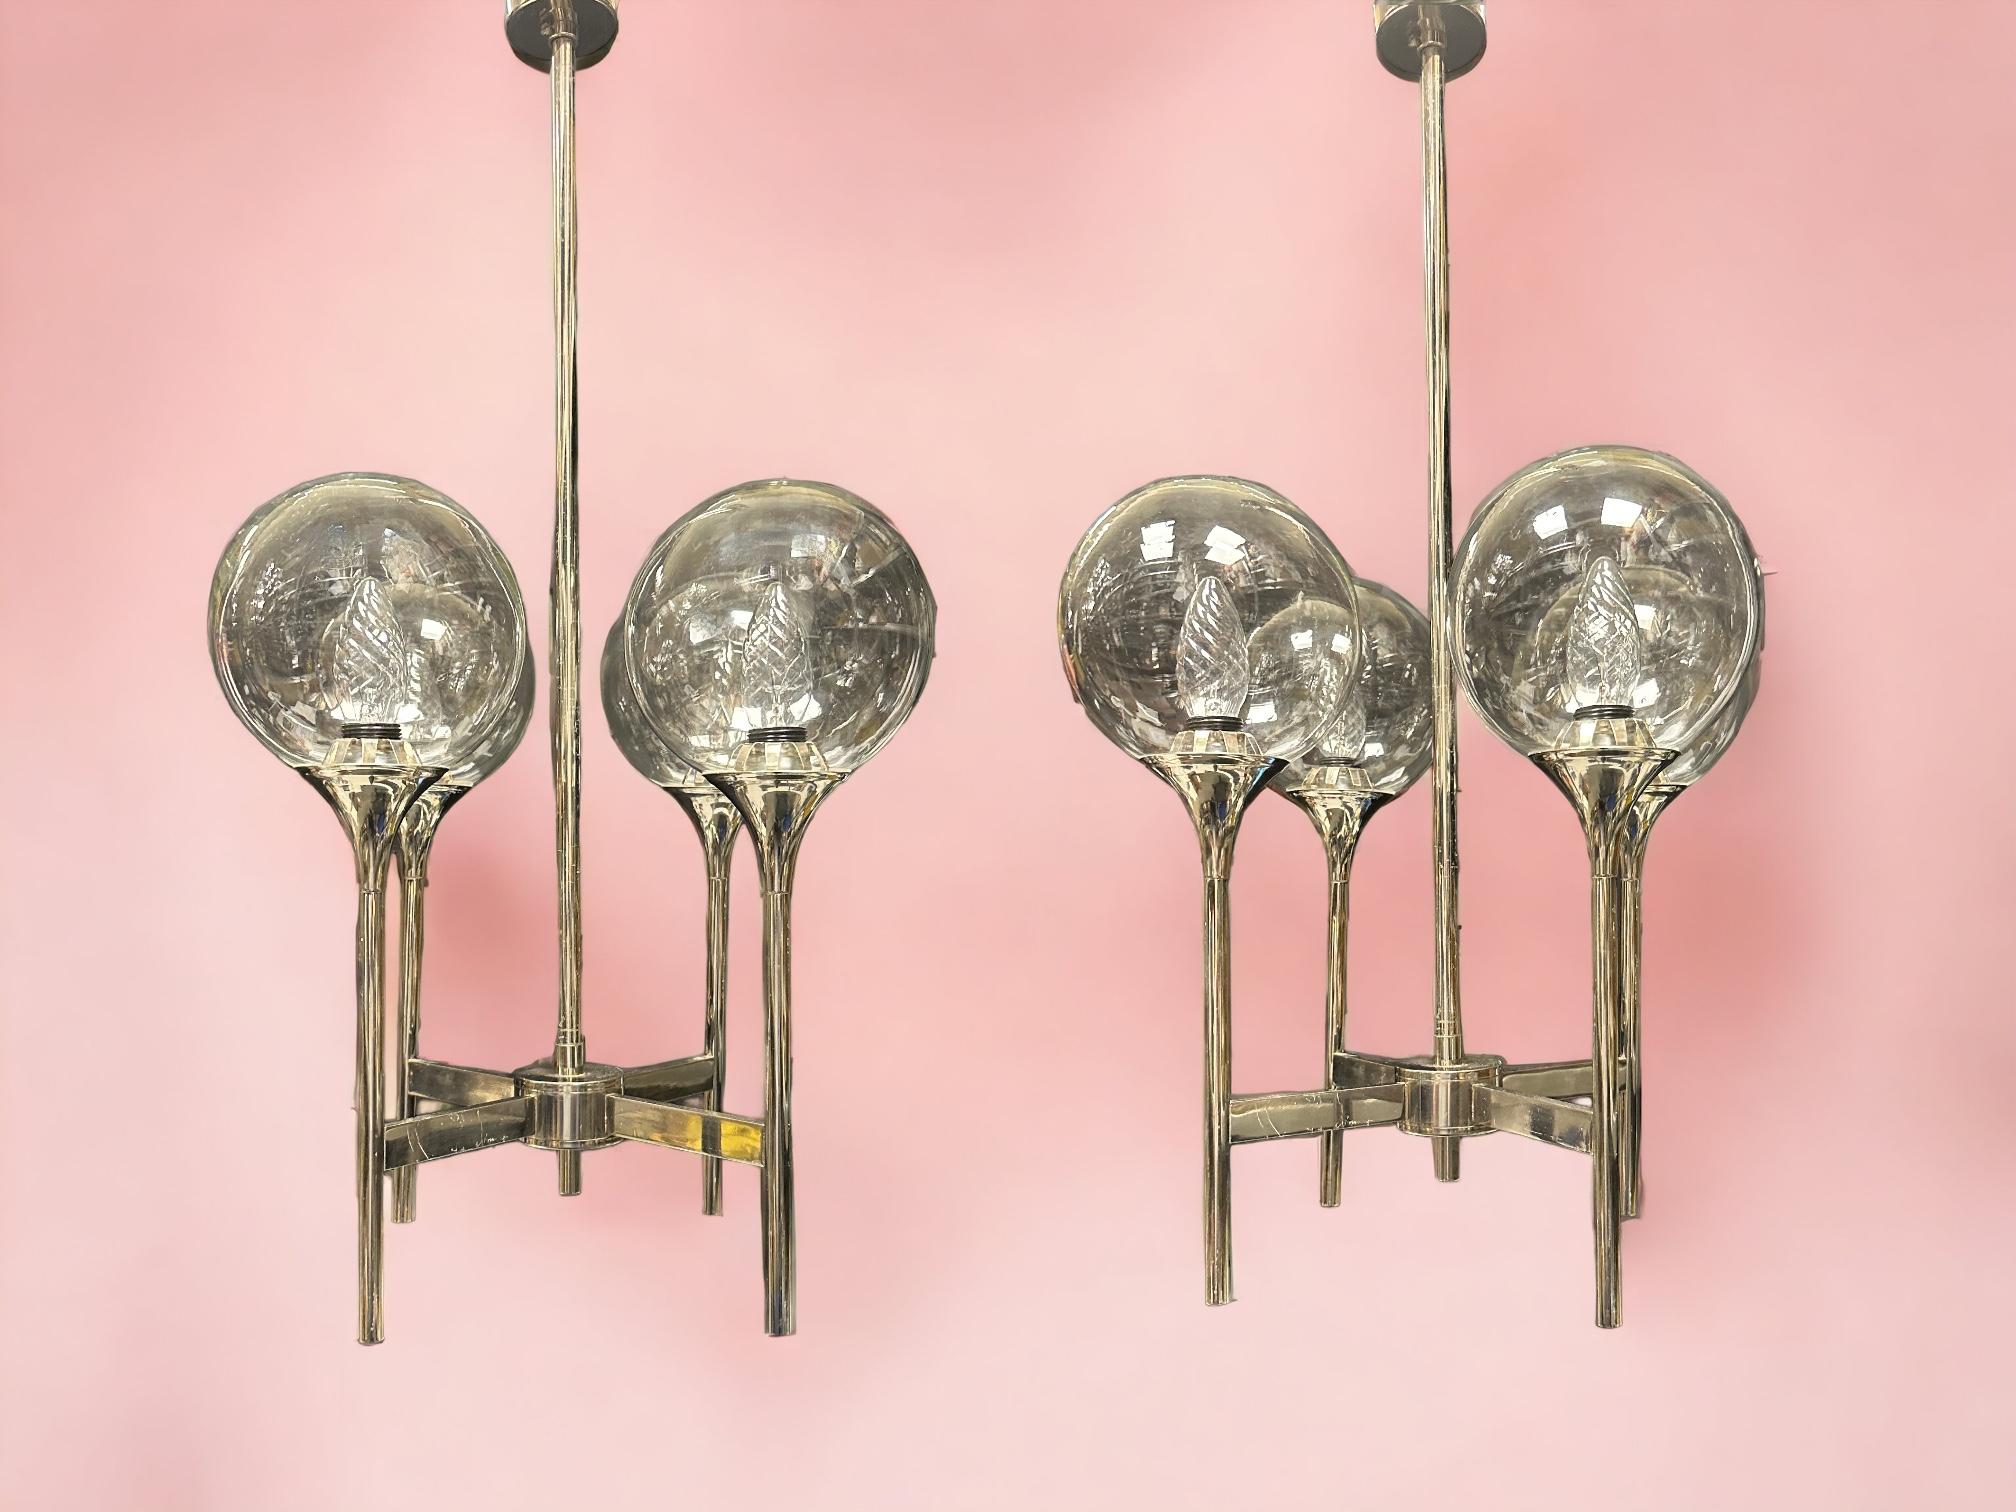 Ensemble de deux lampes à trompette chromées à quatre bras, de style Reggiani/Sciolari, datant des années 1970. Très rare et difficile à trouver en paire. Fabriqué probablement en Italie, années 1970. Chaque lustre nécessite quatre ampoules